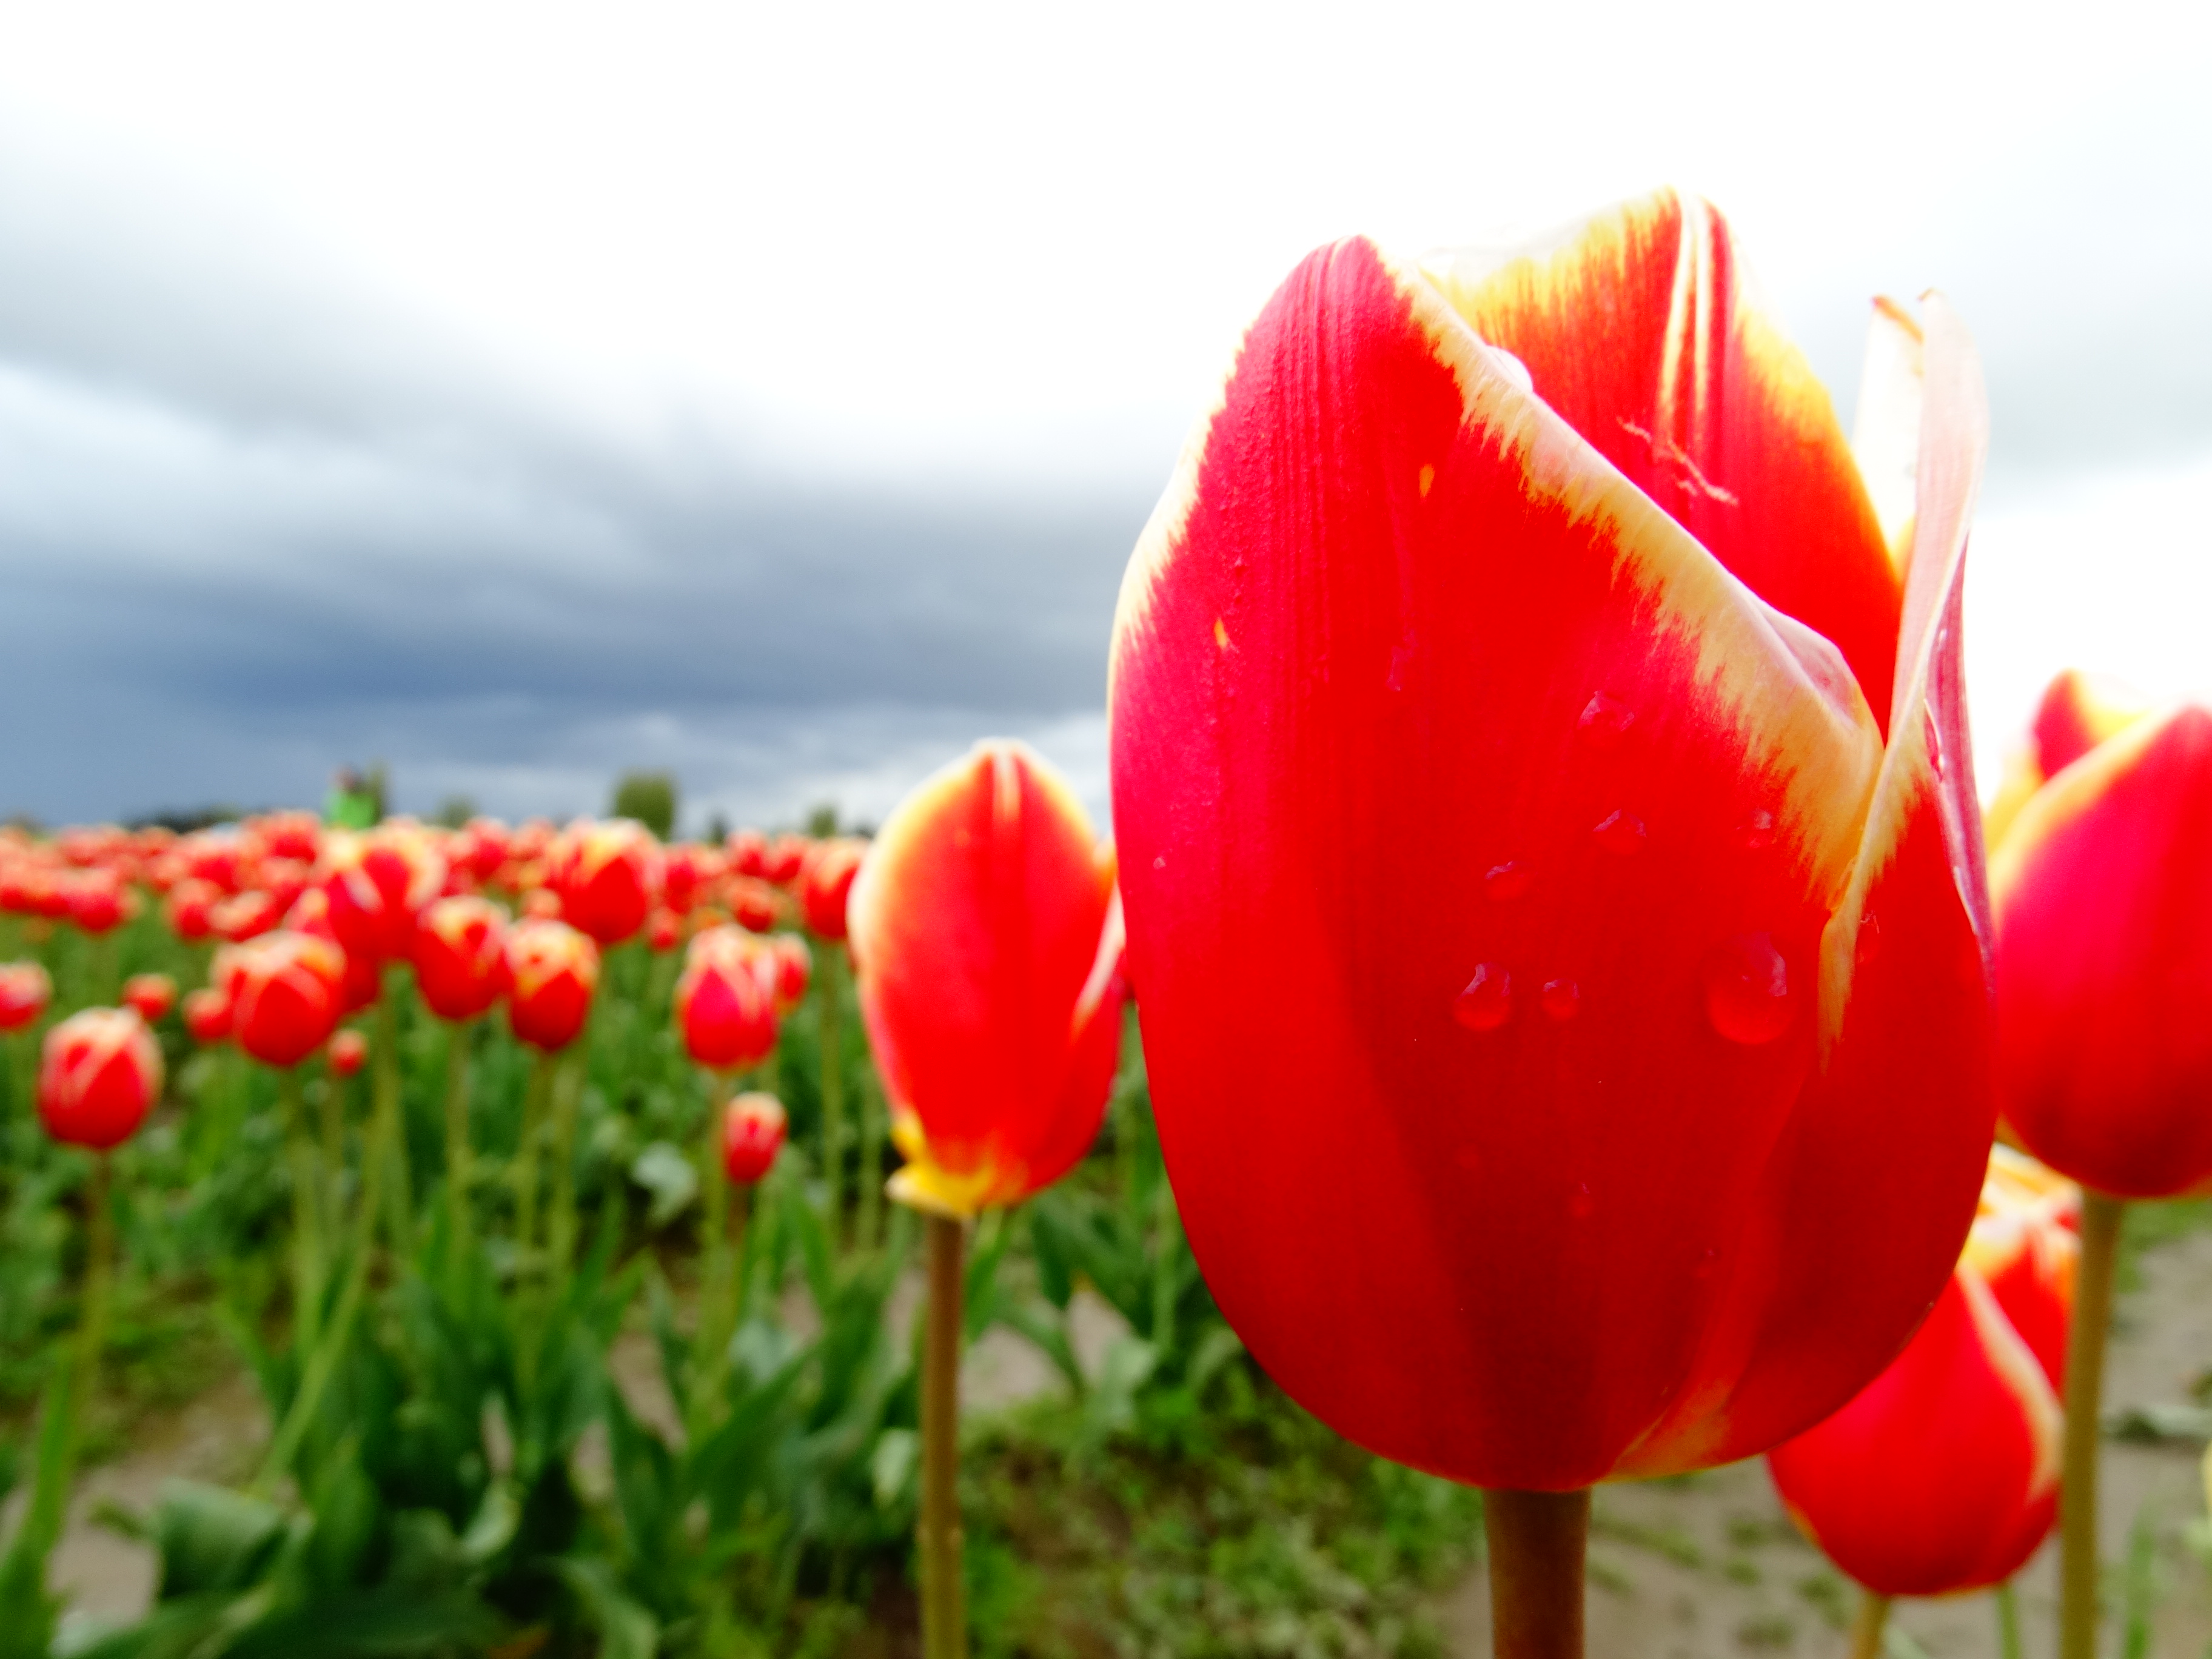 Fiery red tulips